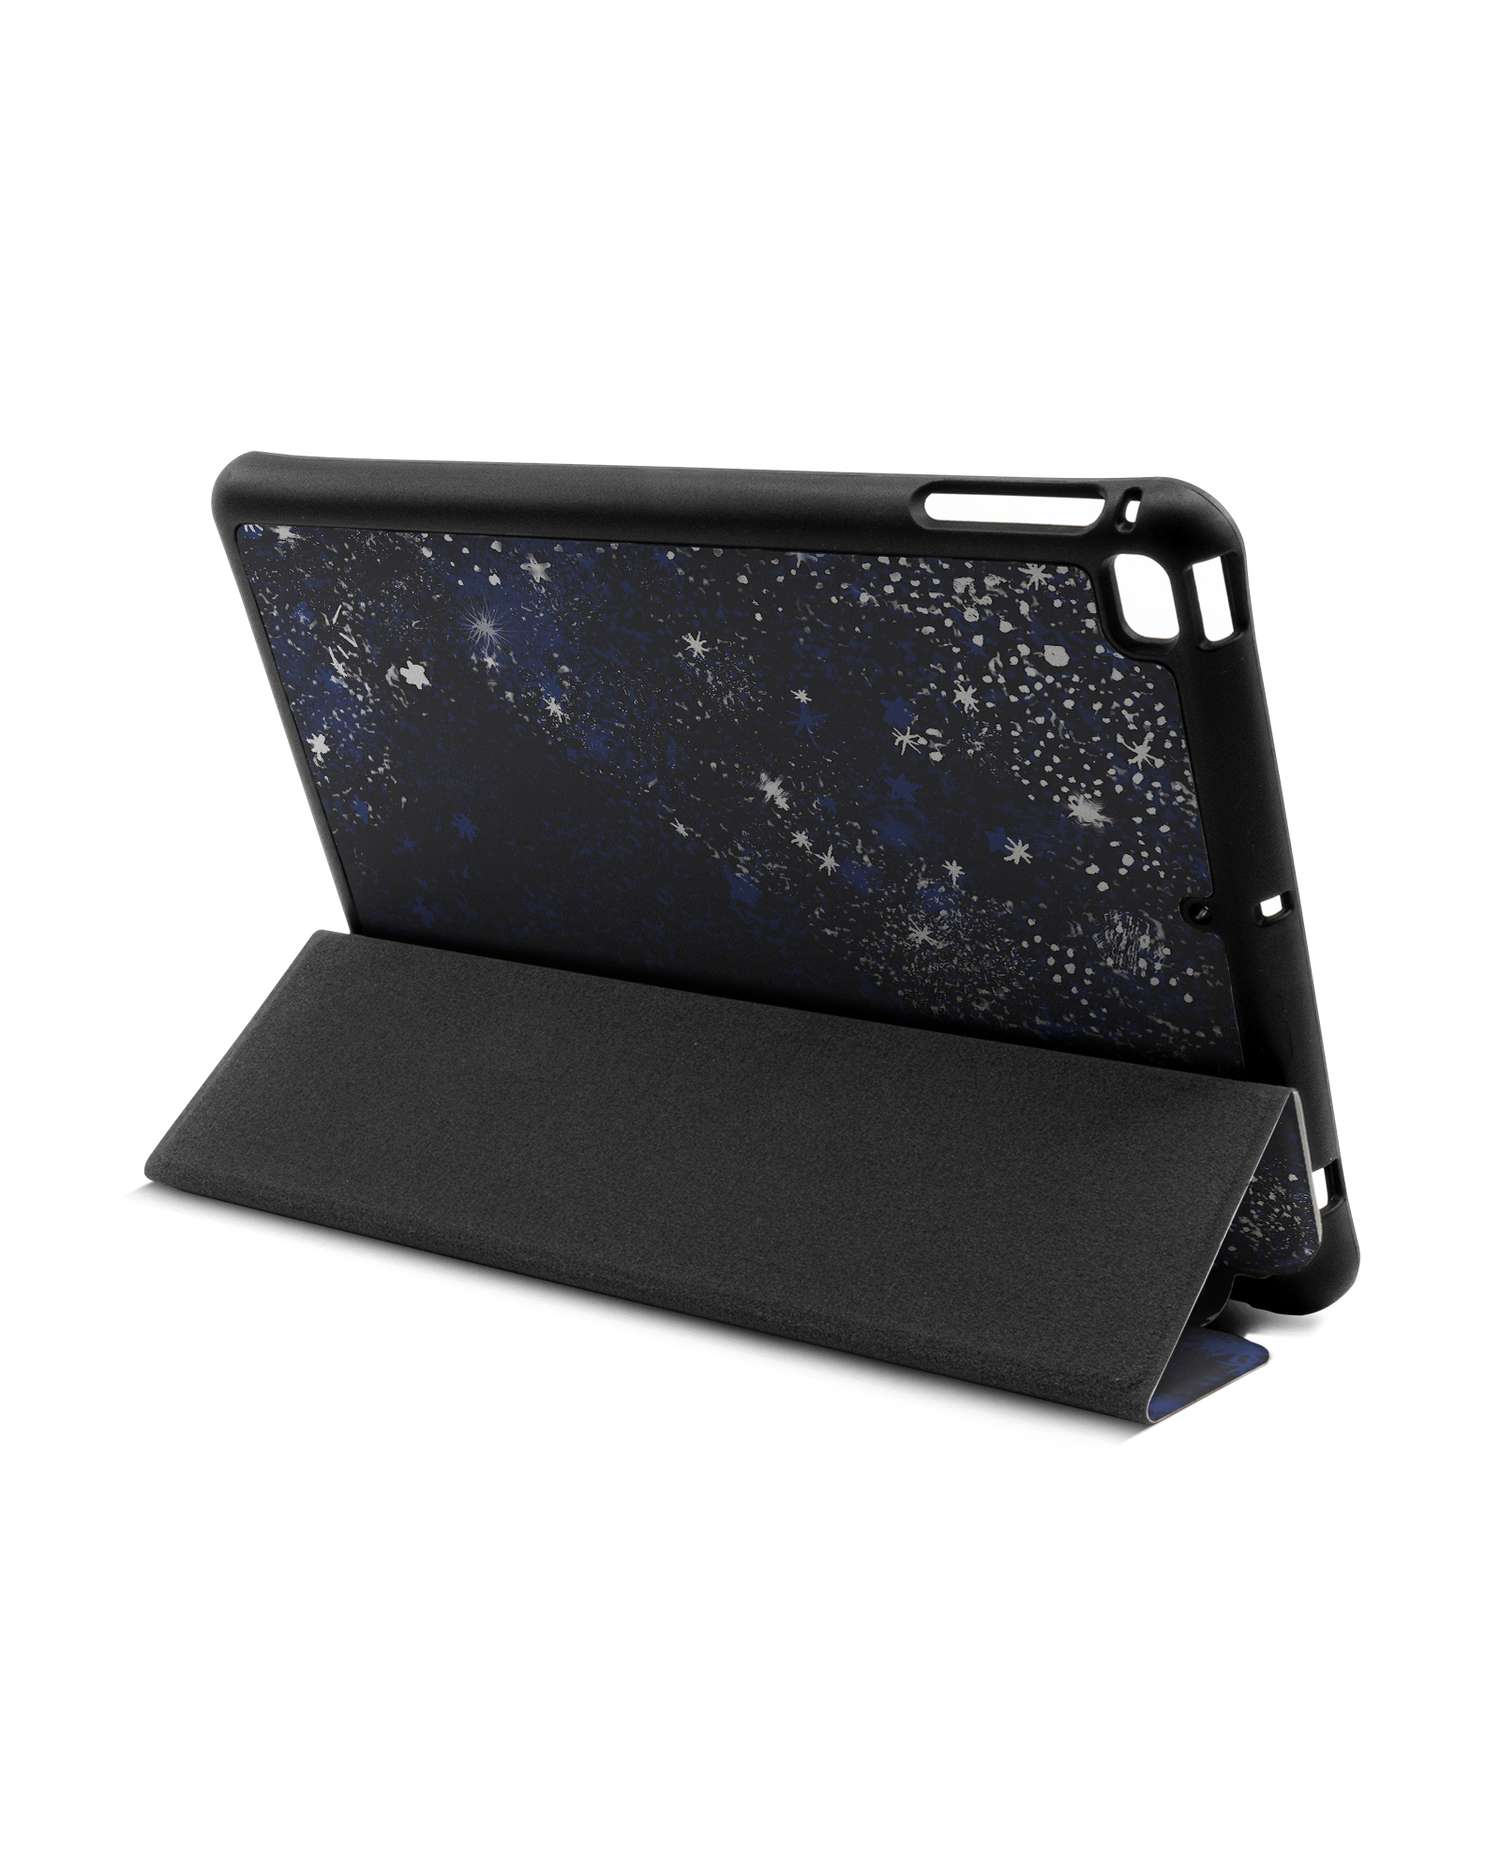 Starry Night Sky iPad Hülle mit Stifthalter Apple iPad mini 5 (2019): Aufgestellt im Querformat von hinten